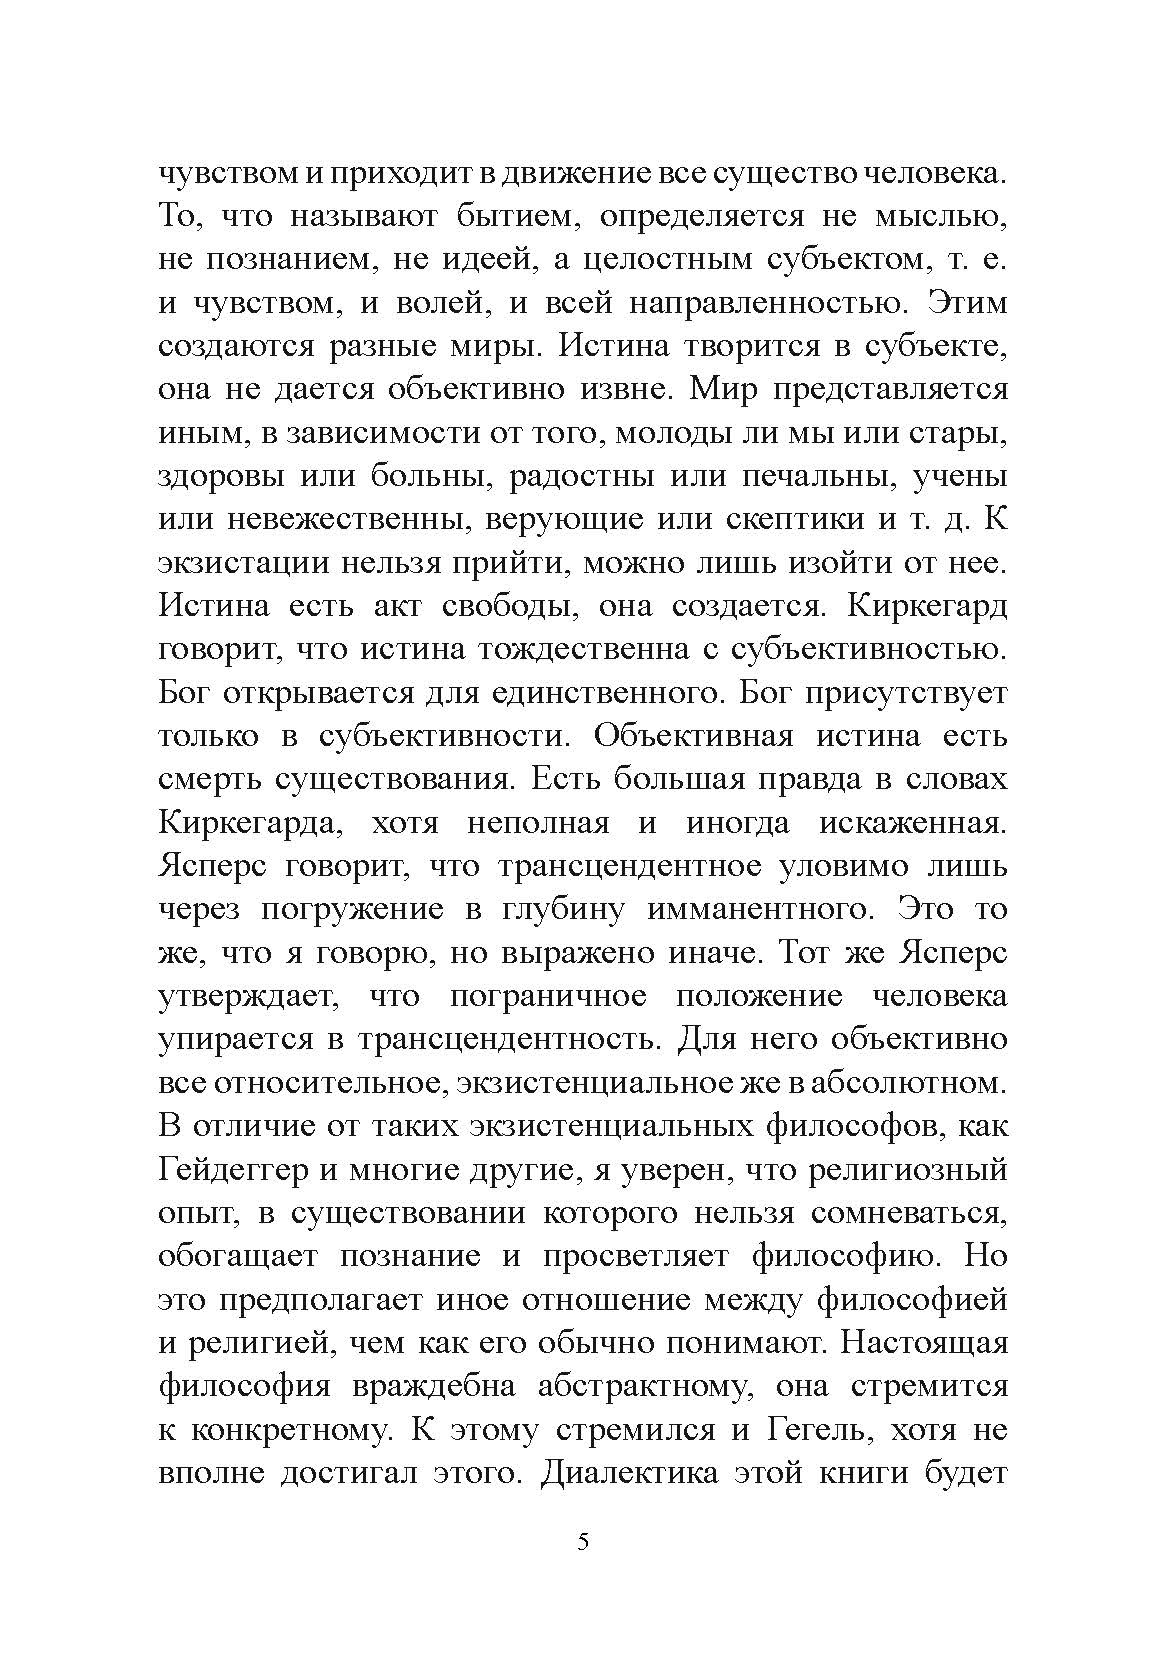 Экзистенциальная диалектика божественного и человеческого. Николай Бердяев. Автор — Николай Бердяев. 